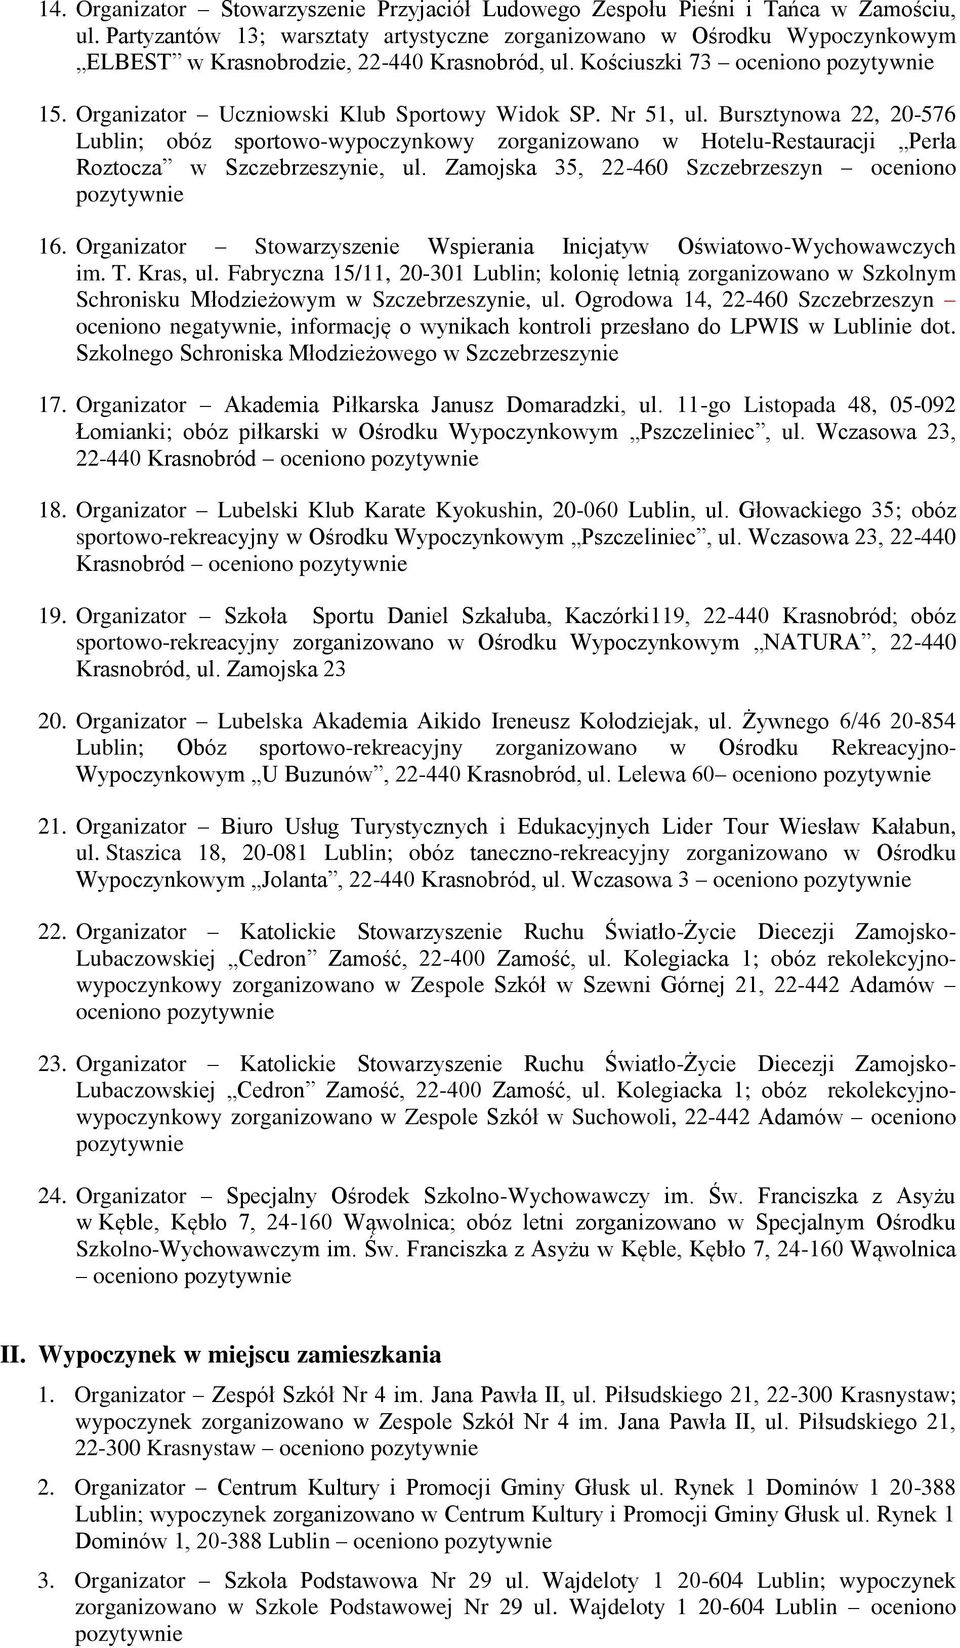 Nr 51, ul. Bursztynowa 22, 20-576 Lublin; obóz sportowo-wypoczynkowy zorganizowano w Hotelu-Restauracji Perła Roztocza w Szczebrzeszynie, ul. Zamojska 35, 22-460 Szczebrzeszyn oceniono 16.